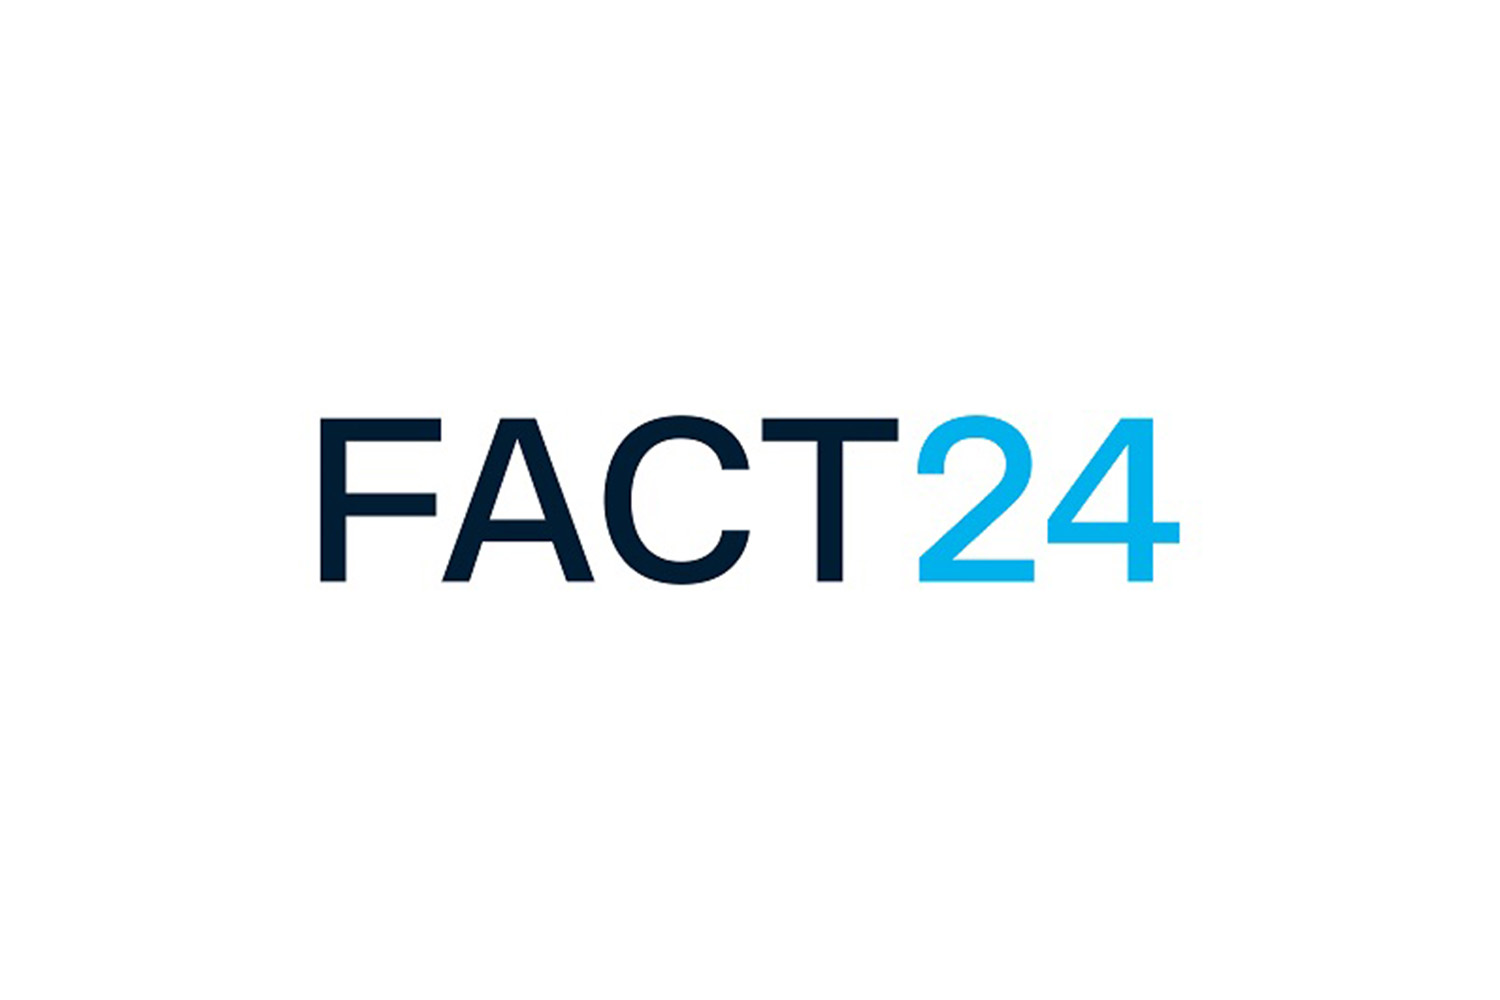 Fact 24 Logo